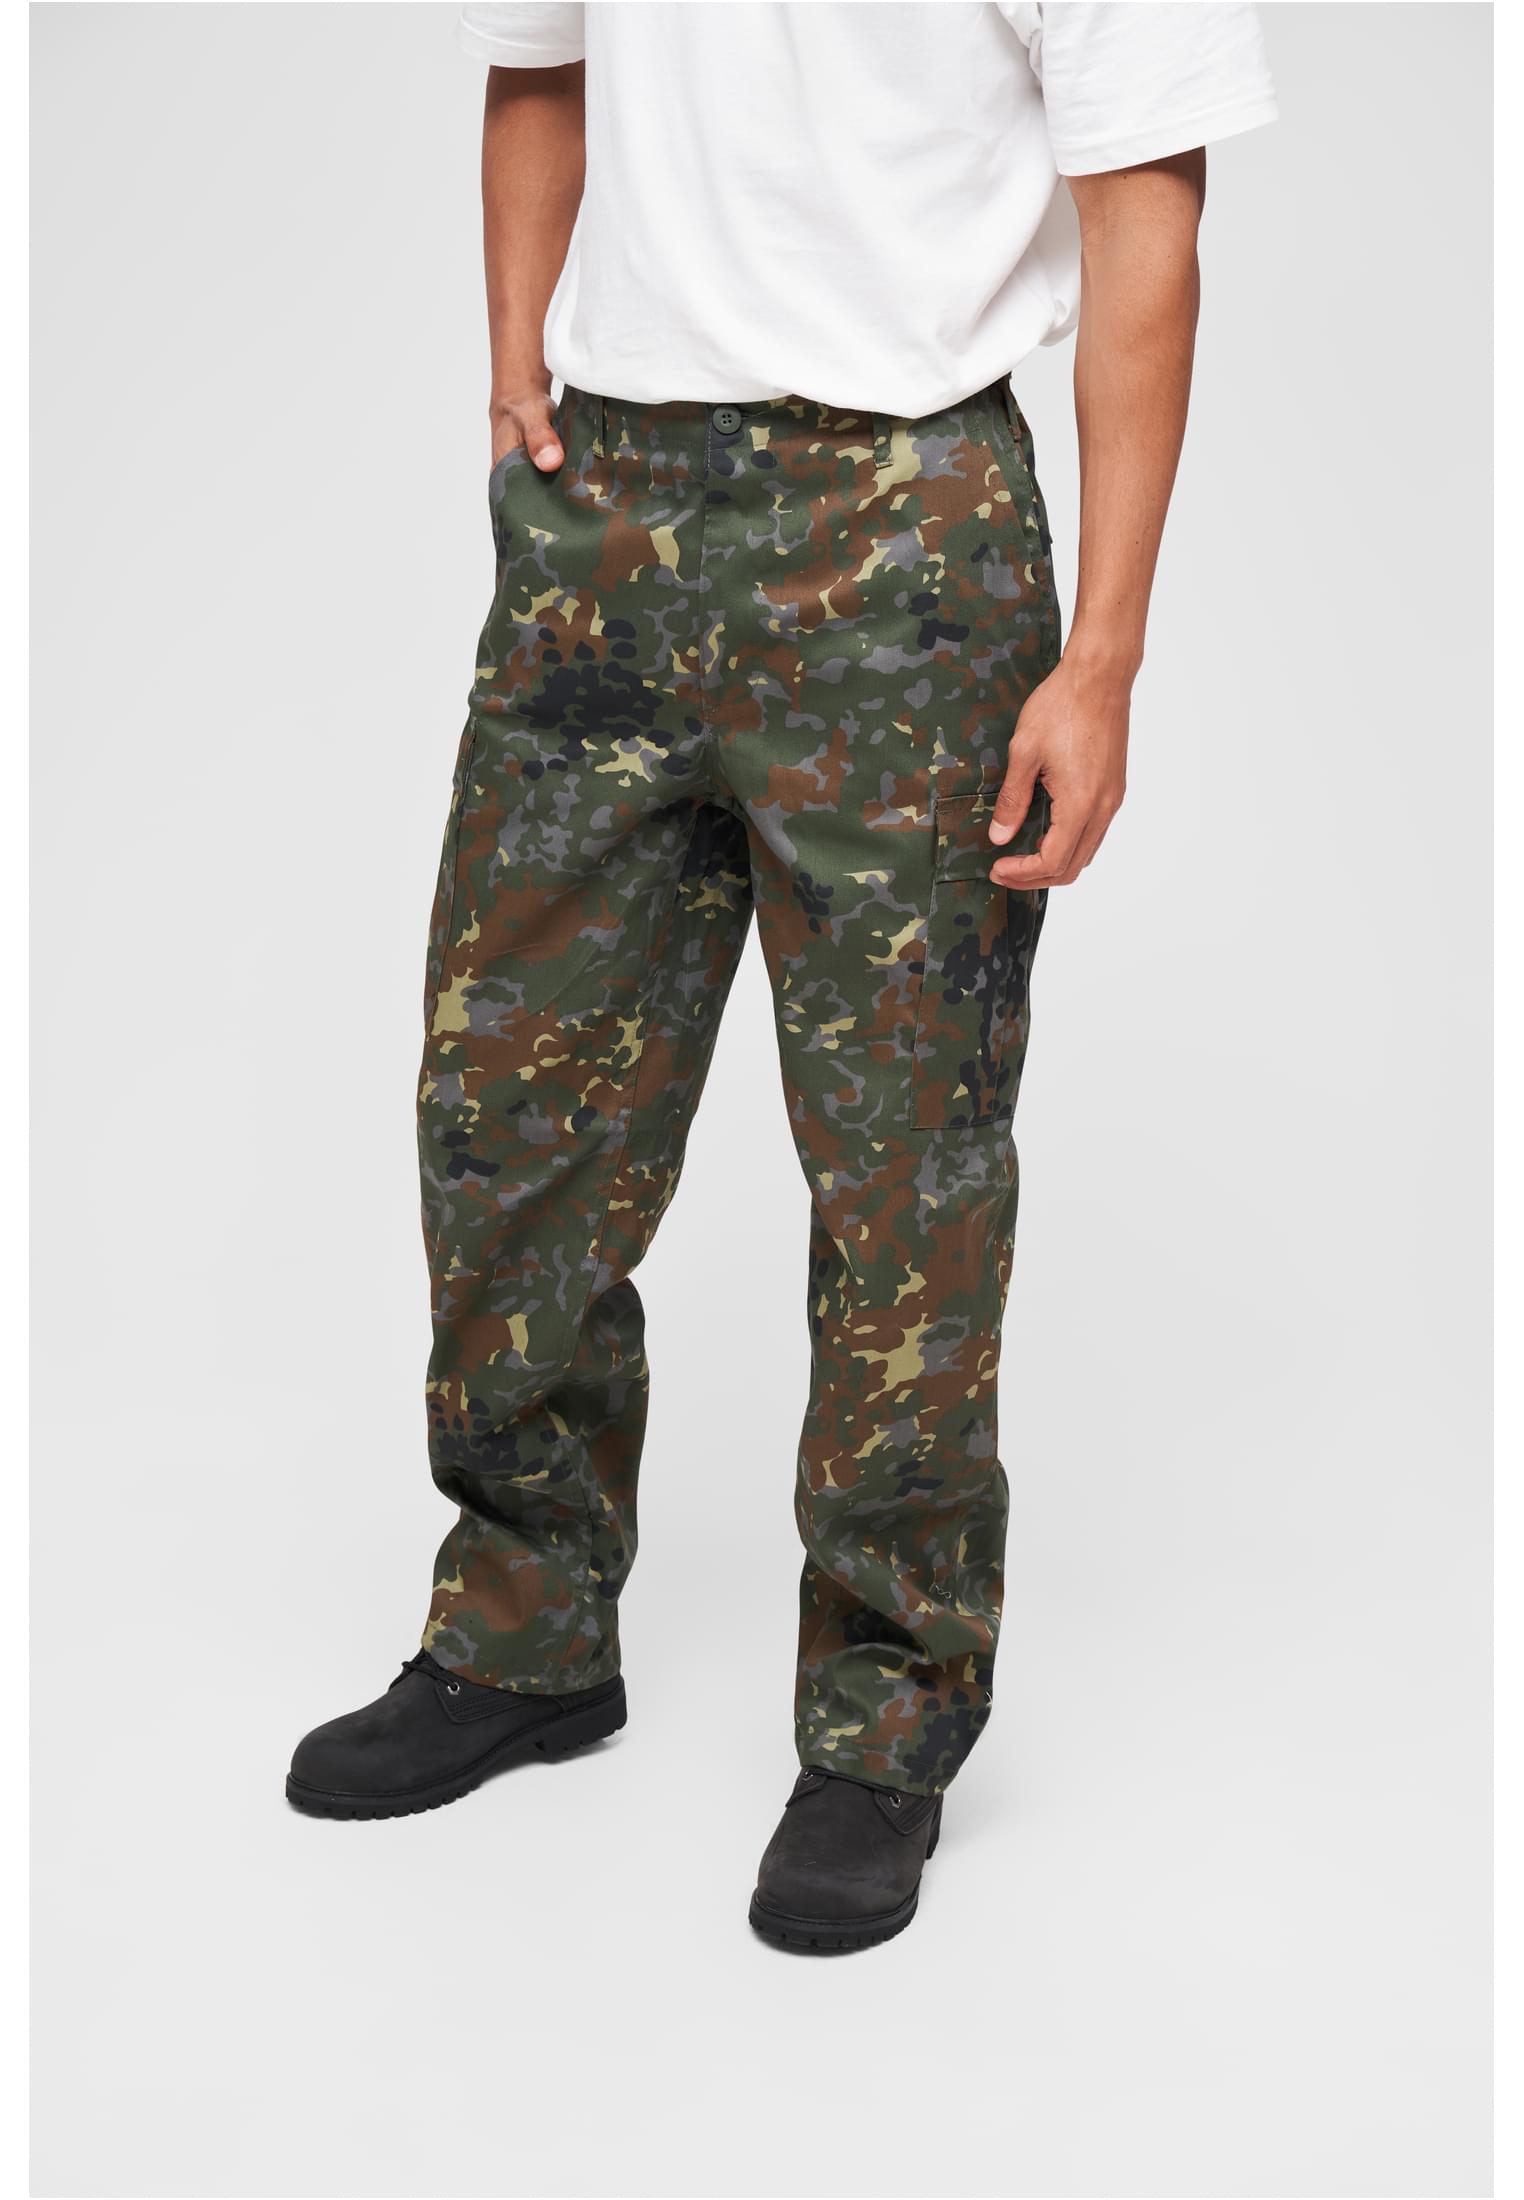 Hosen US Ranger Cargo Pants in Farbe flecktarn